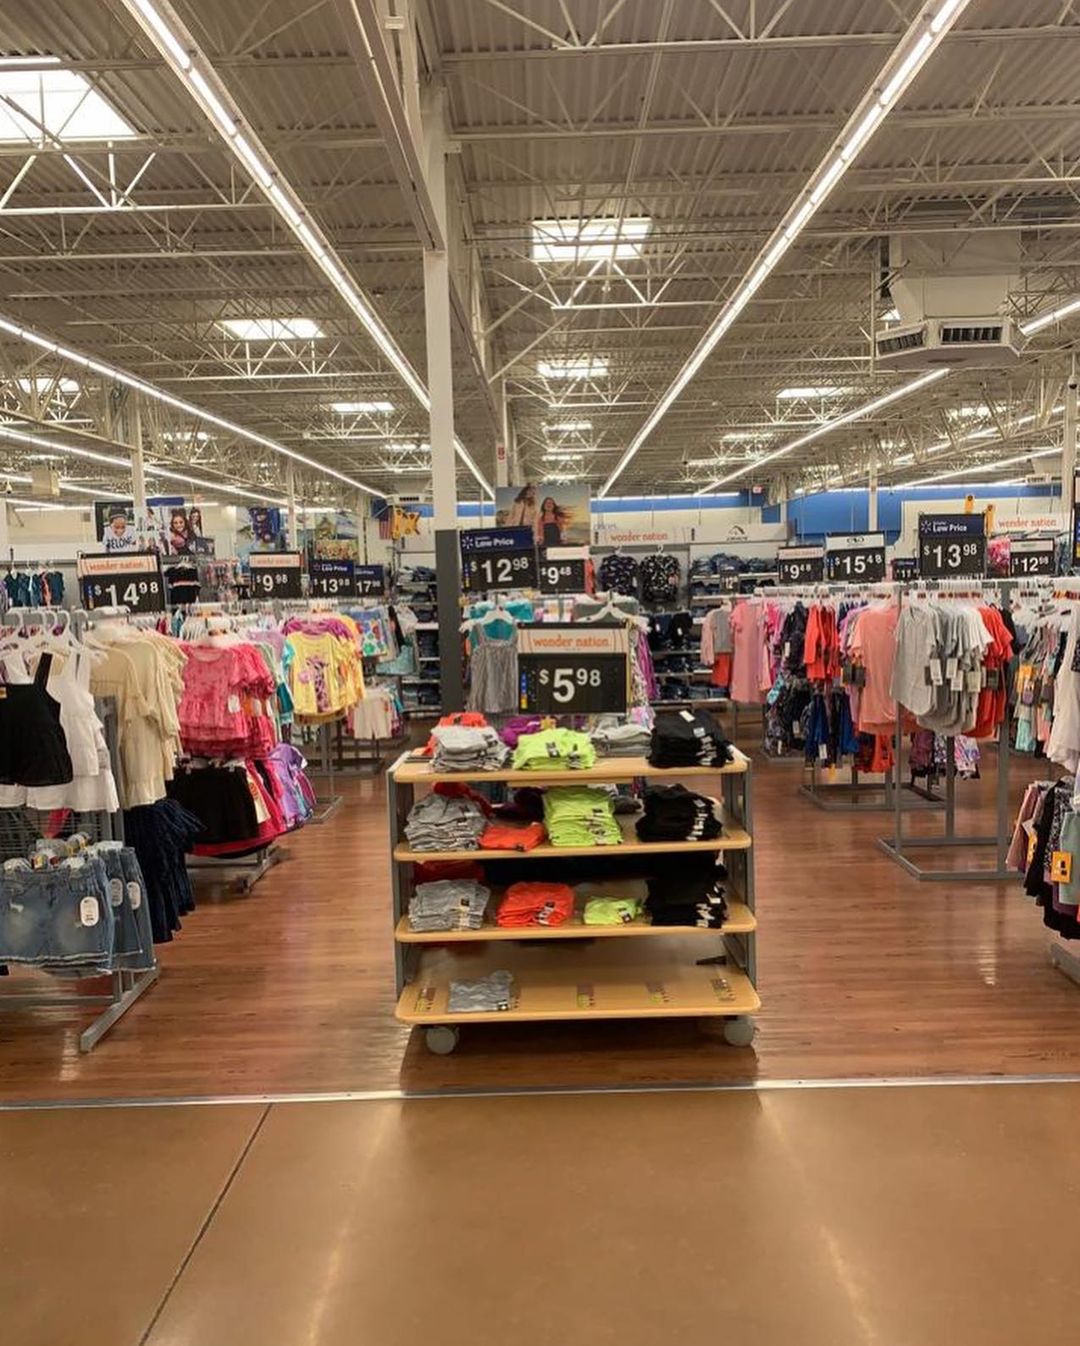 Buy Clothing at Walmart Orlando